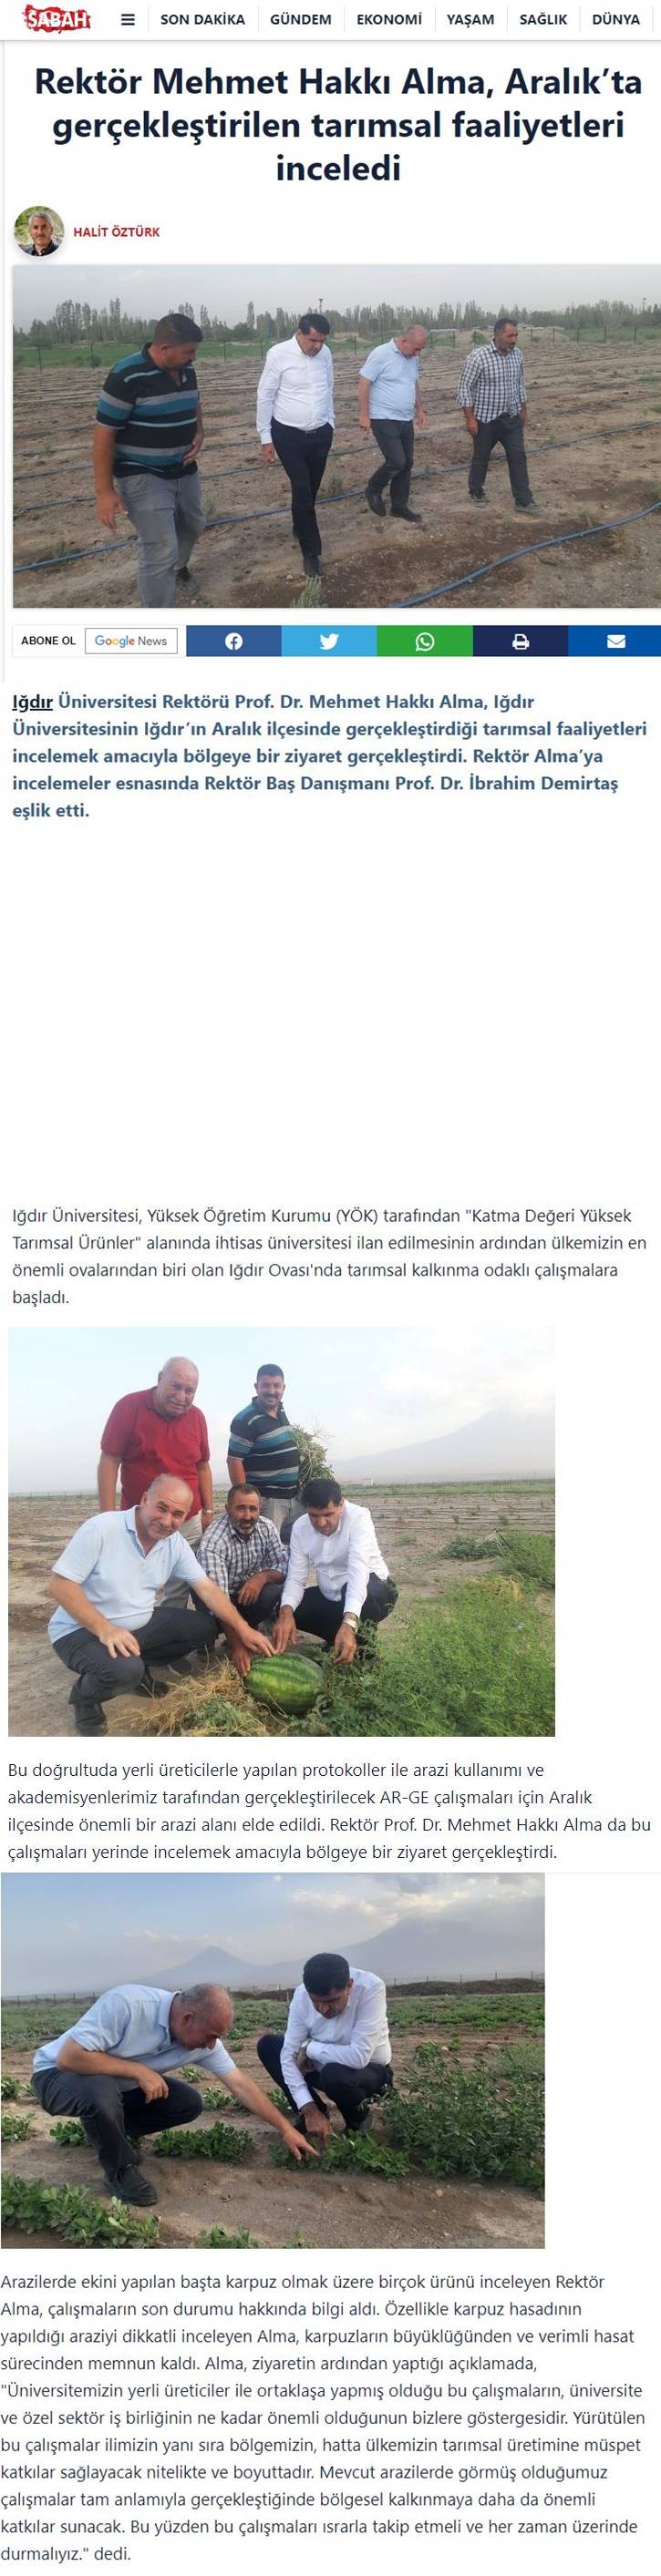 Rektör Mehmet Hakkı Alma, Aralık’ta Gerçekleştirilen Tarımsal Faaliyetleri İnceledi